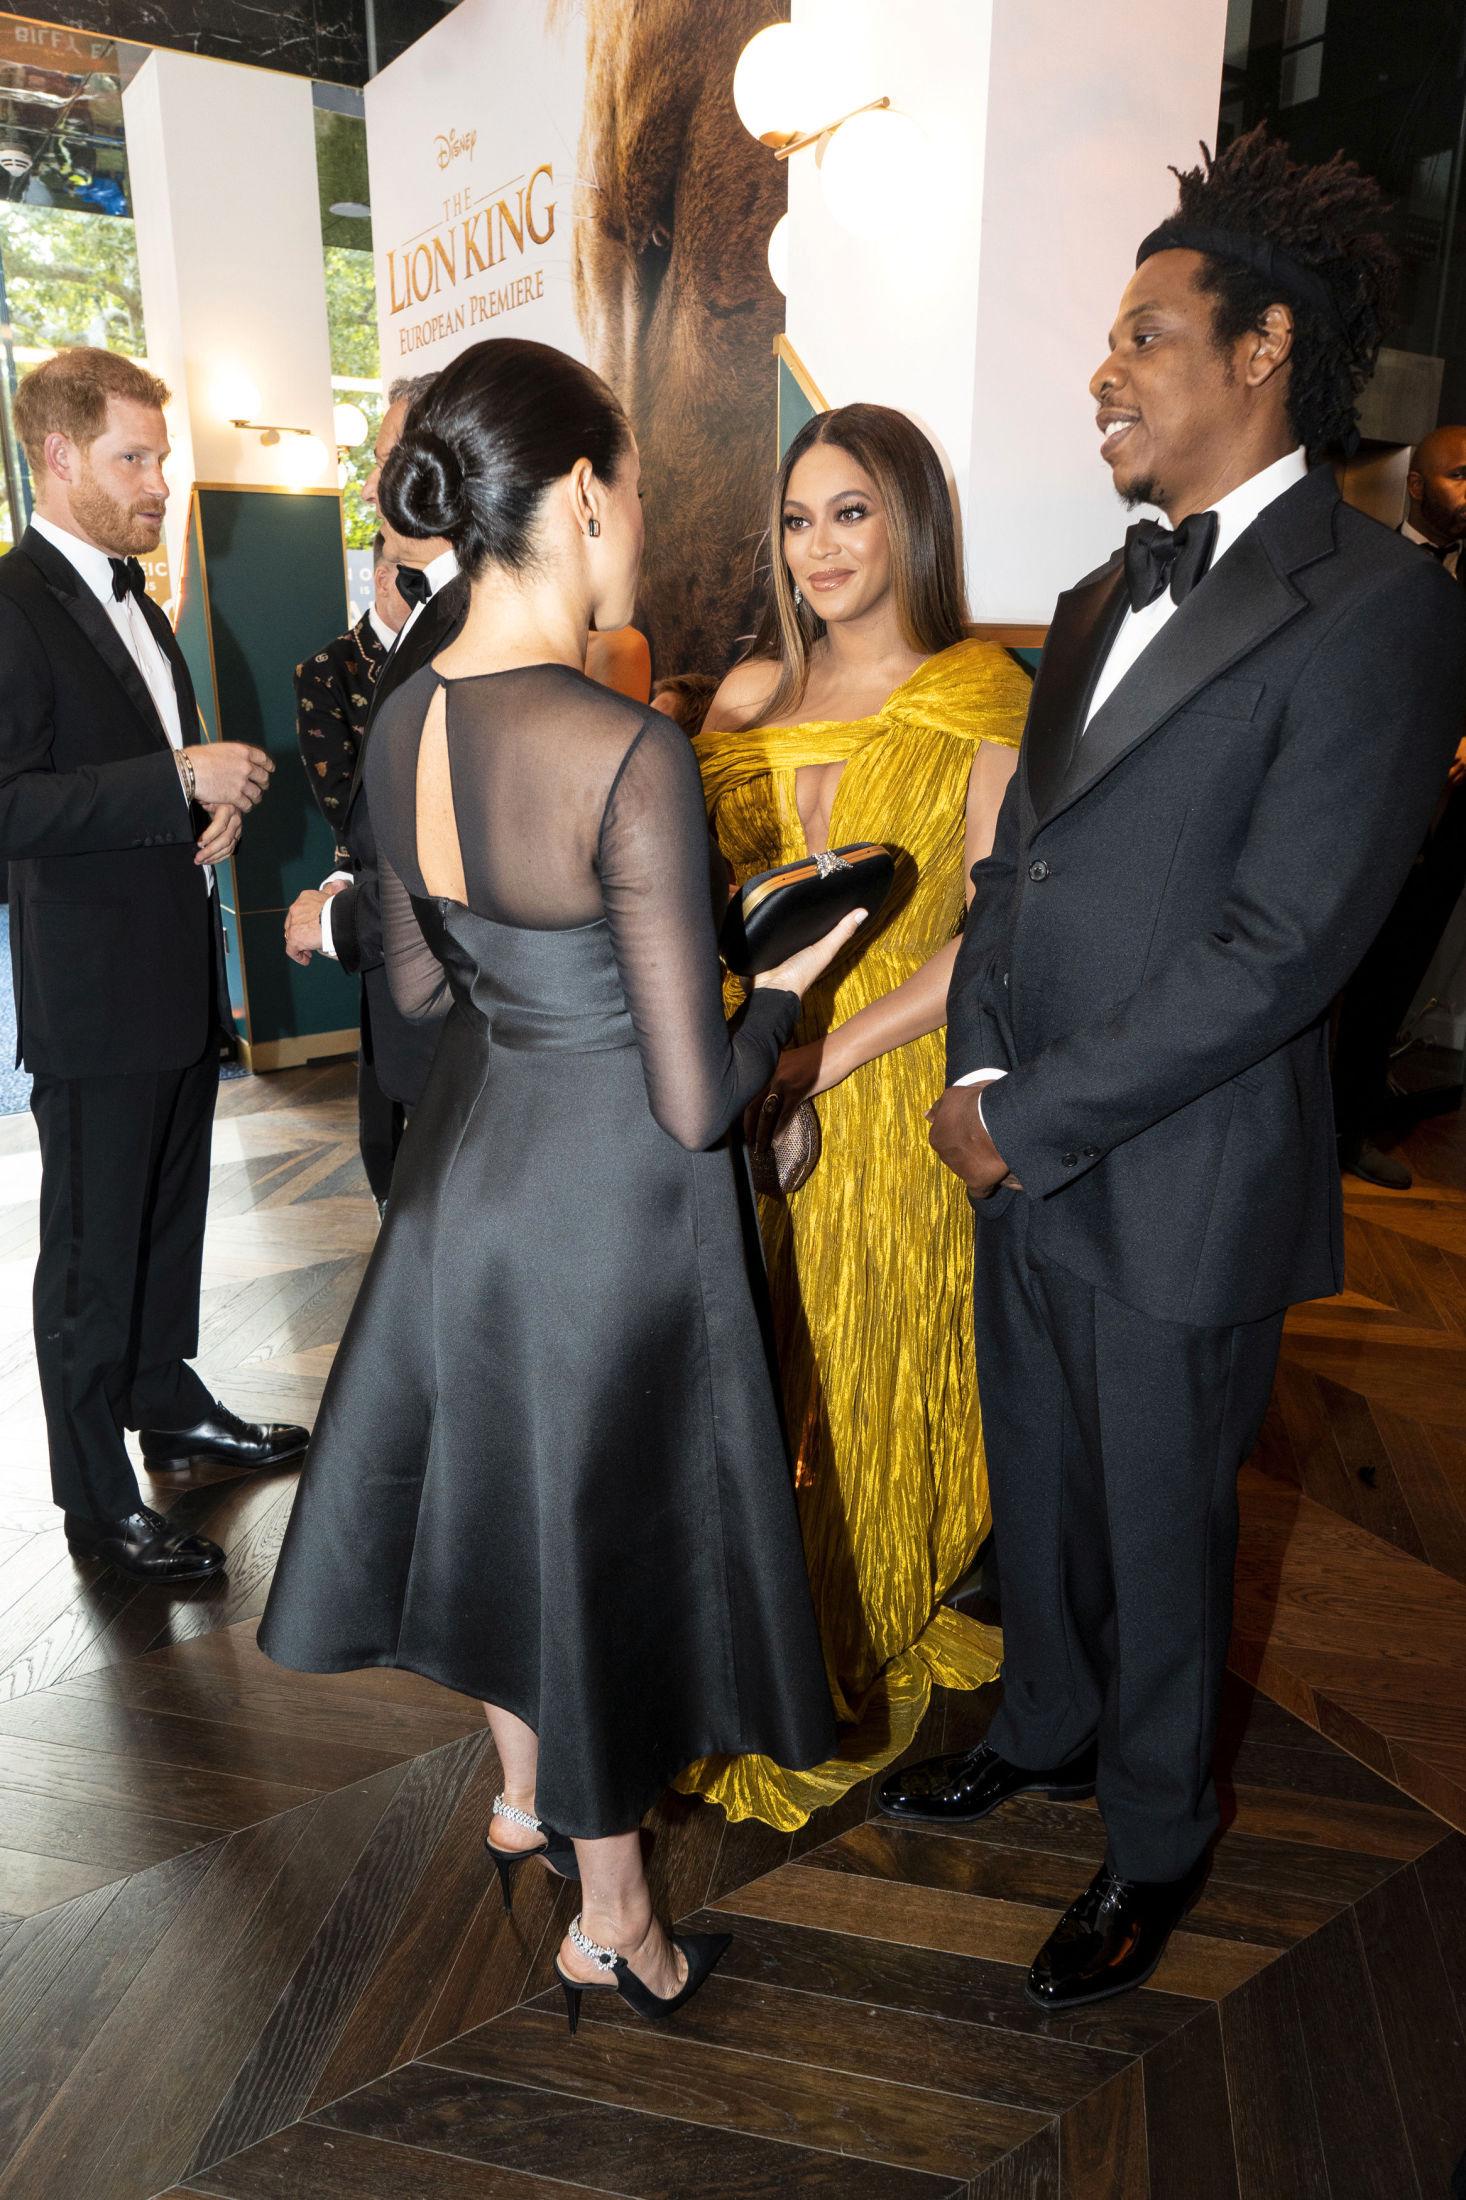 STJERNEMØTE: Her står hertuginne Meghan og prins Harry sammen med Beyoncé og Jay-Z. Foto: Niklas Halle'n/REUTERS.